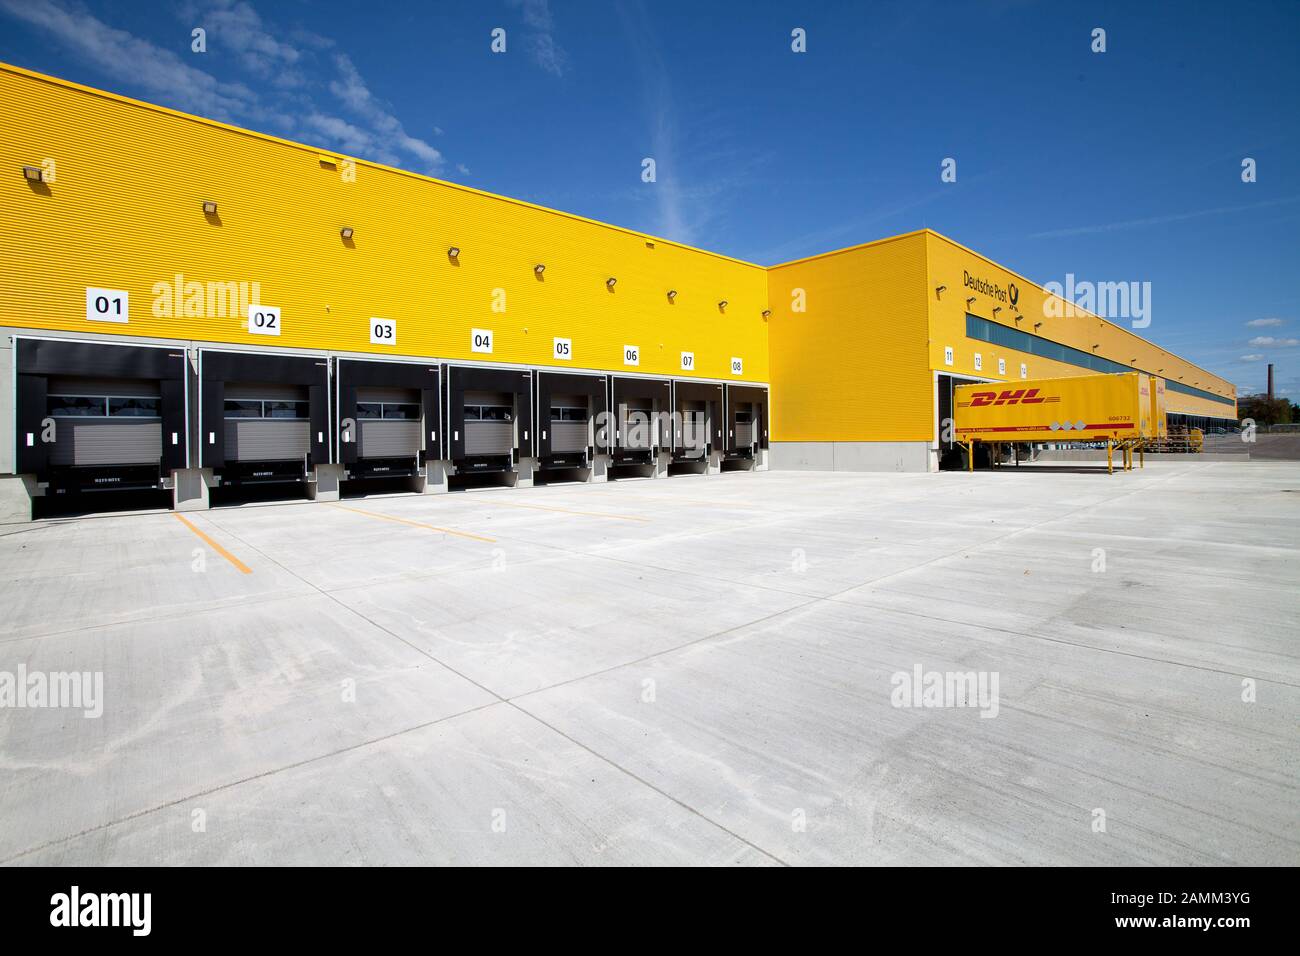 Das neue Distributionszentrum von DHL in München-Neuhausen. Hier die Ladeschlitze der Halle. [Automatisierte Übersetzung] Stockfoto